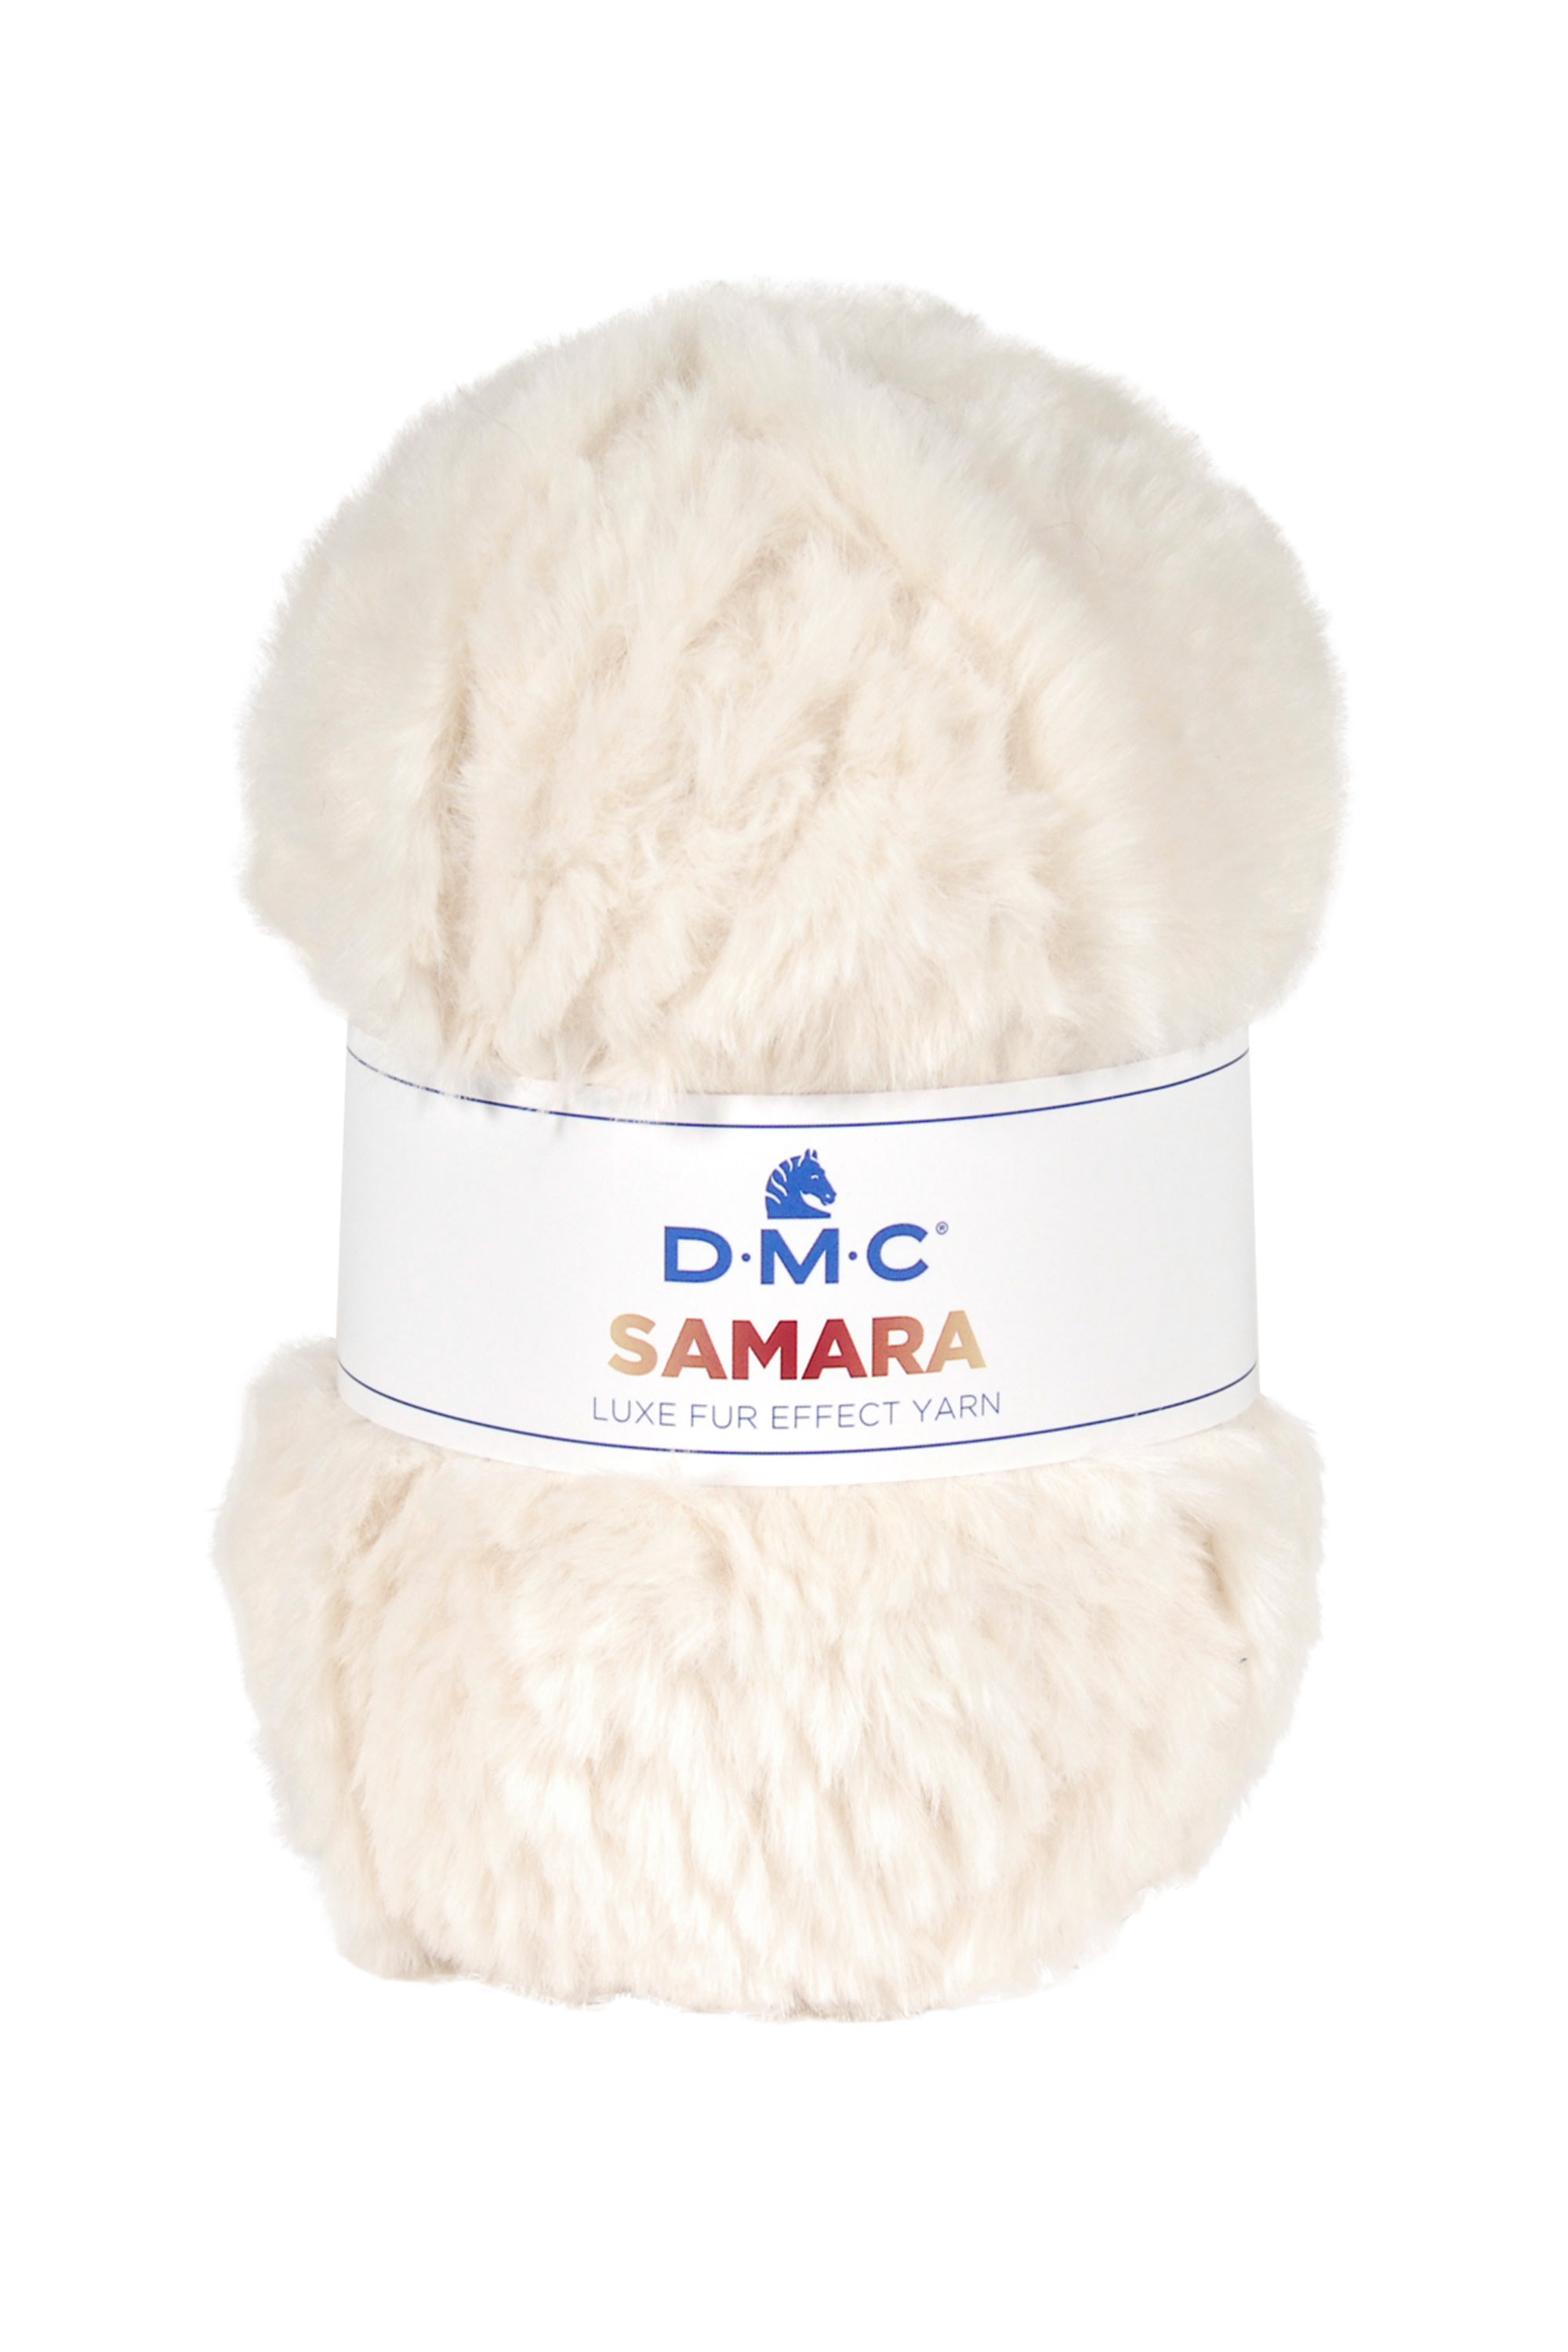 DMC- Samara -  Krém